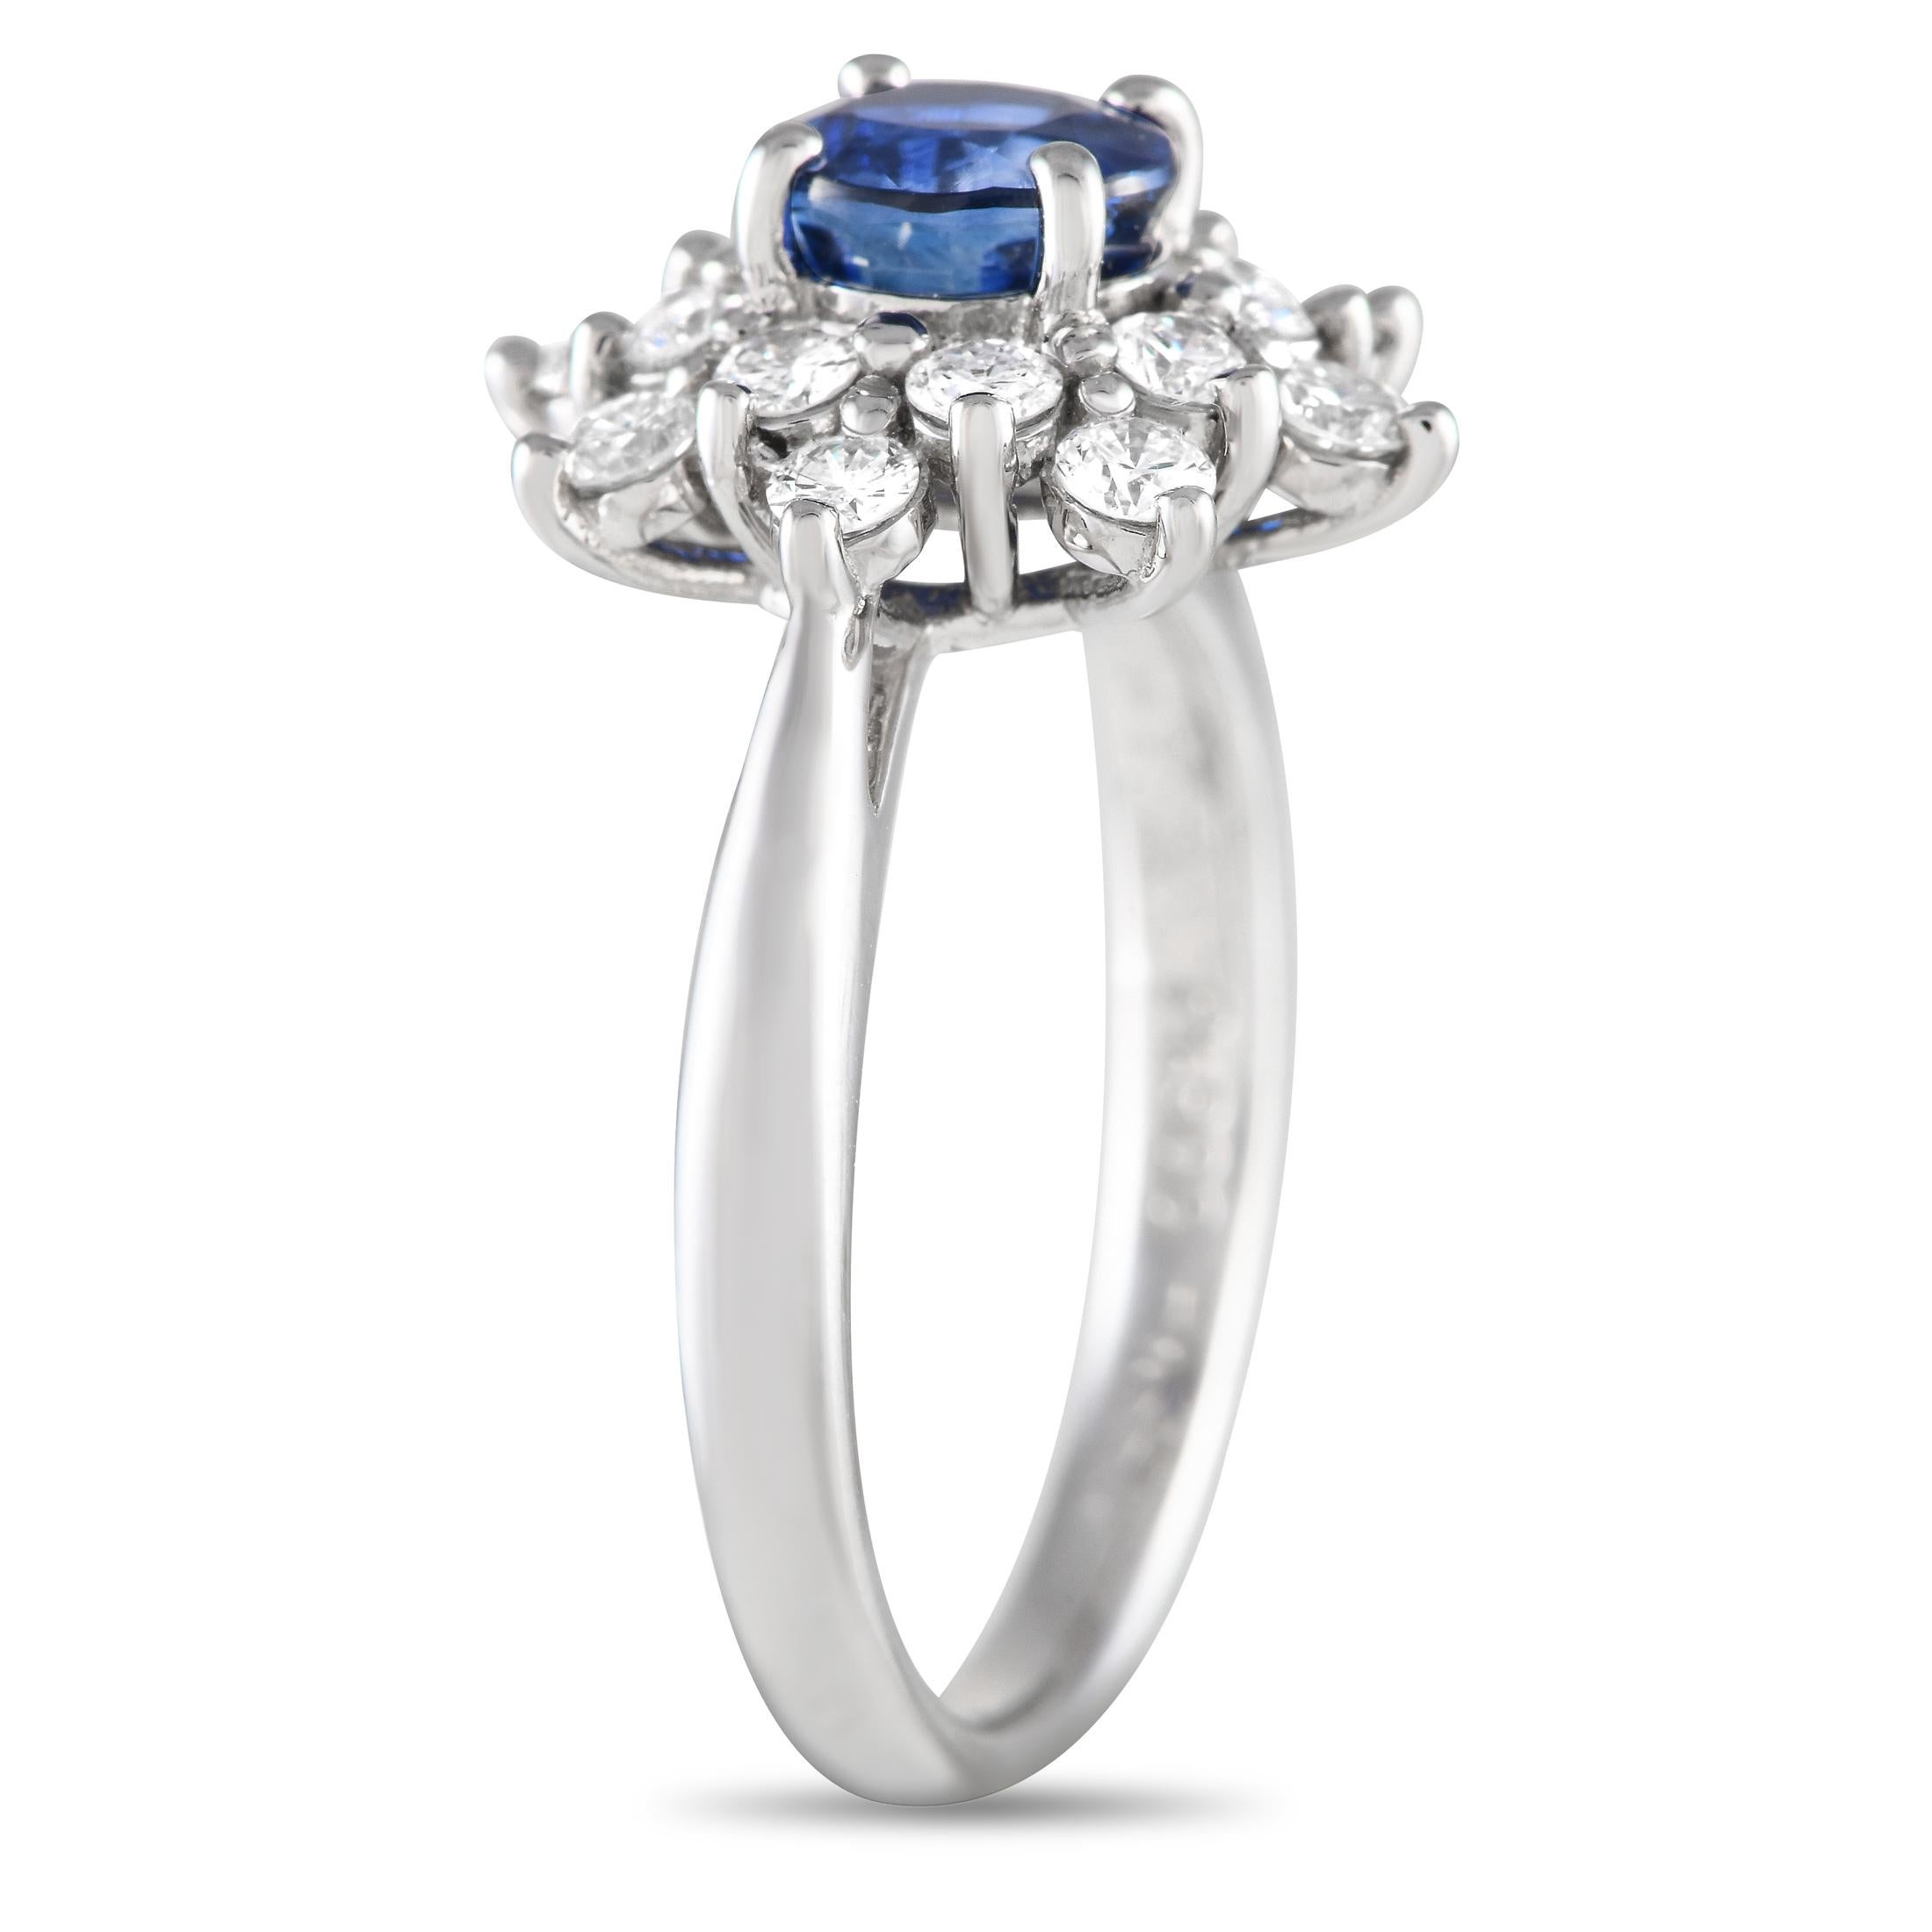 Cette bague en diamant et saphir bleu est un magnifique symbole d'amour. Elle est réalisée en platine Everlast et ornée d'un magnifique saphir rond de 1,20 ct. La pierre bleue éblouissante est entourée d'un halo de diamants ronds en forme d'étoile.